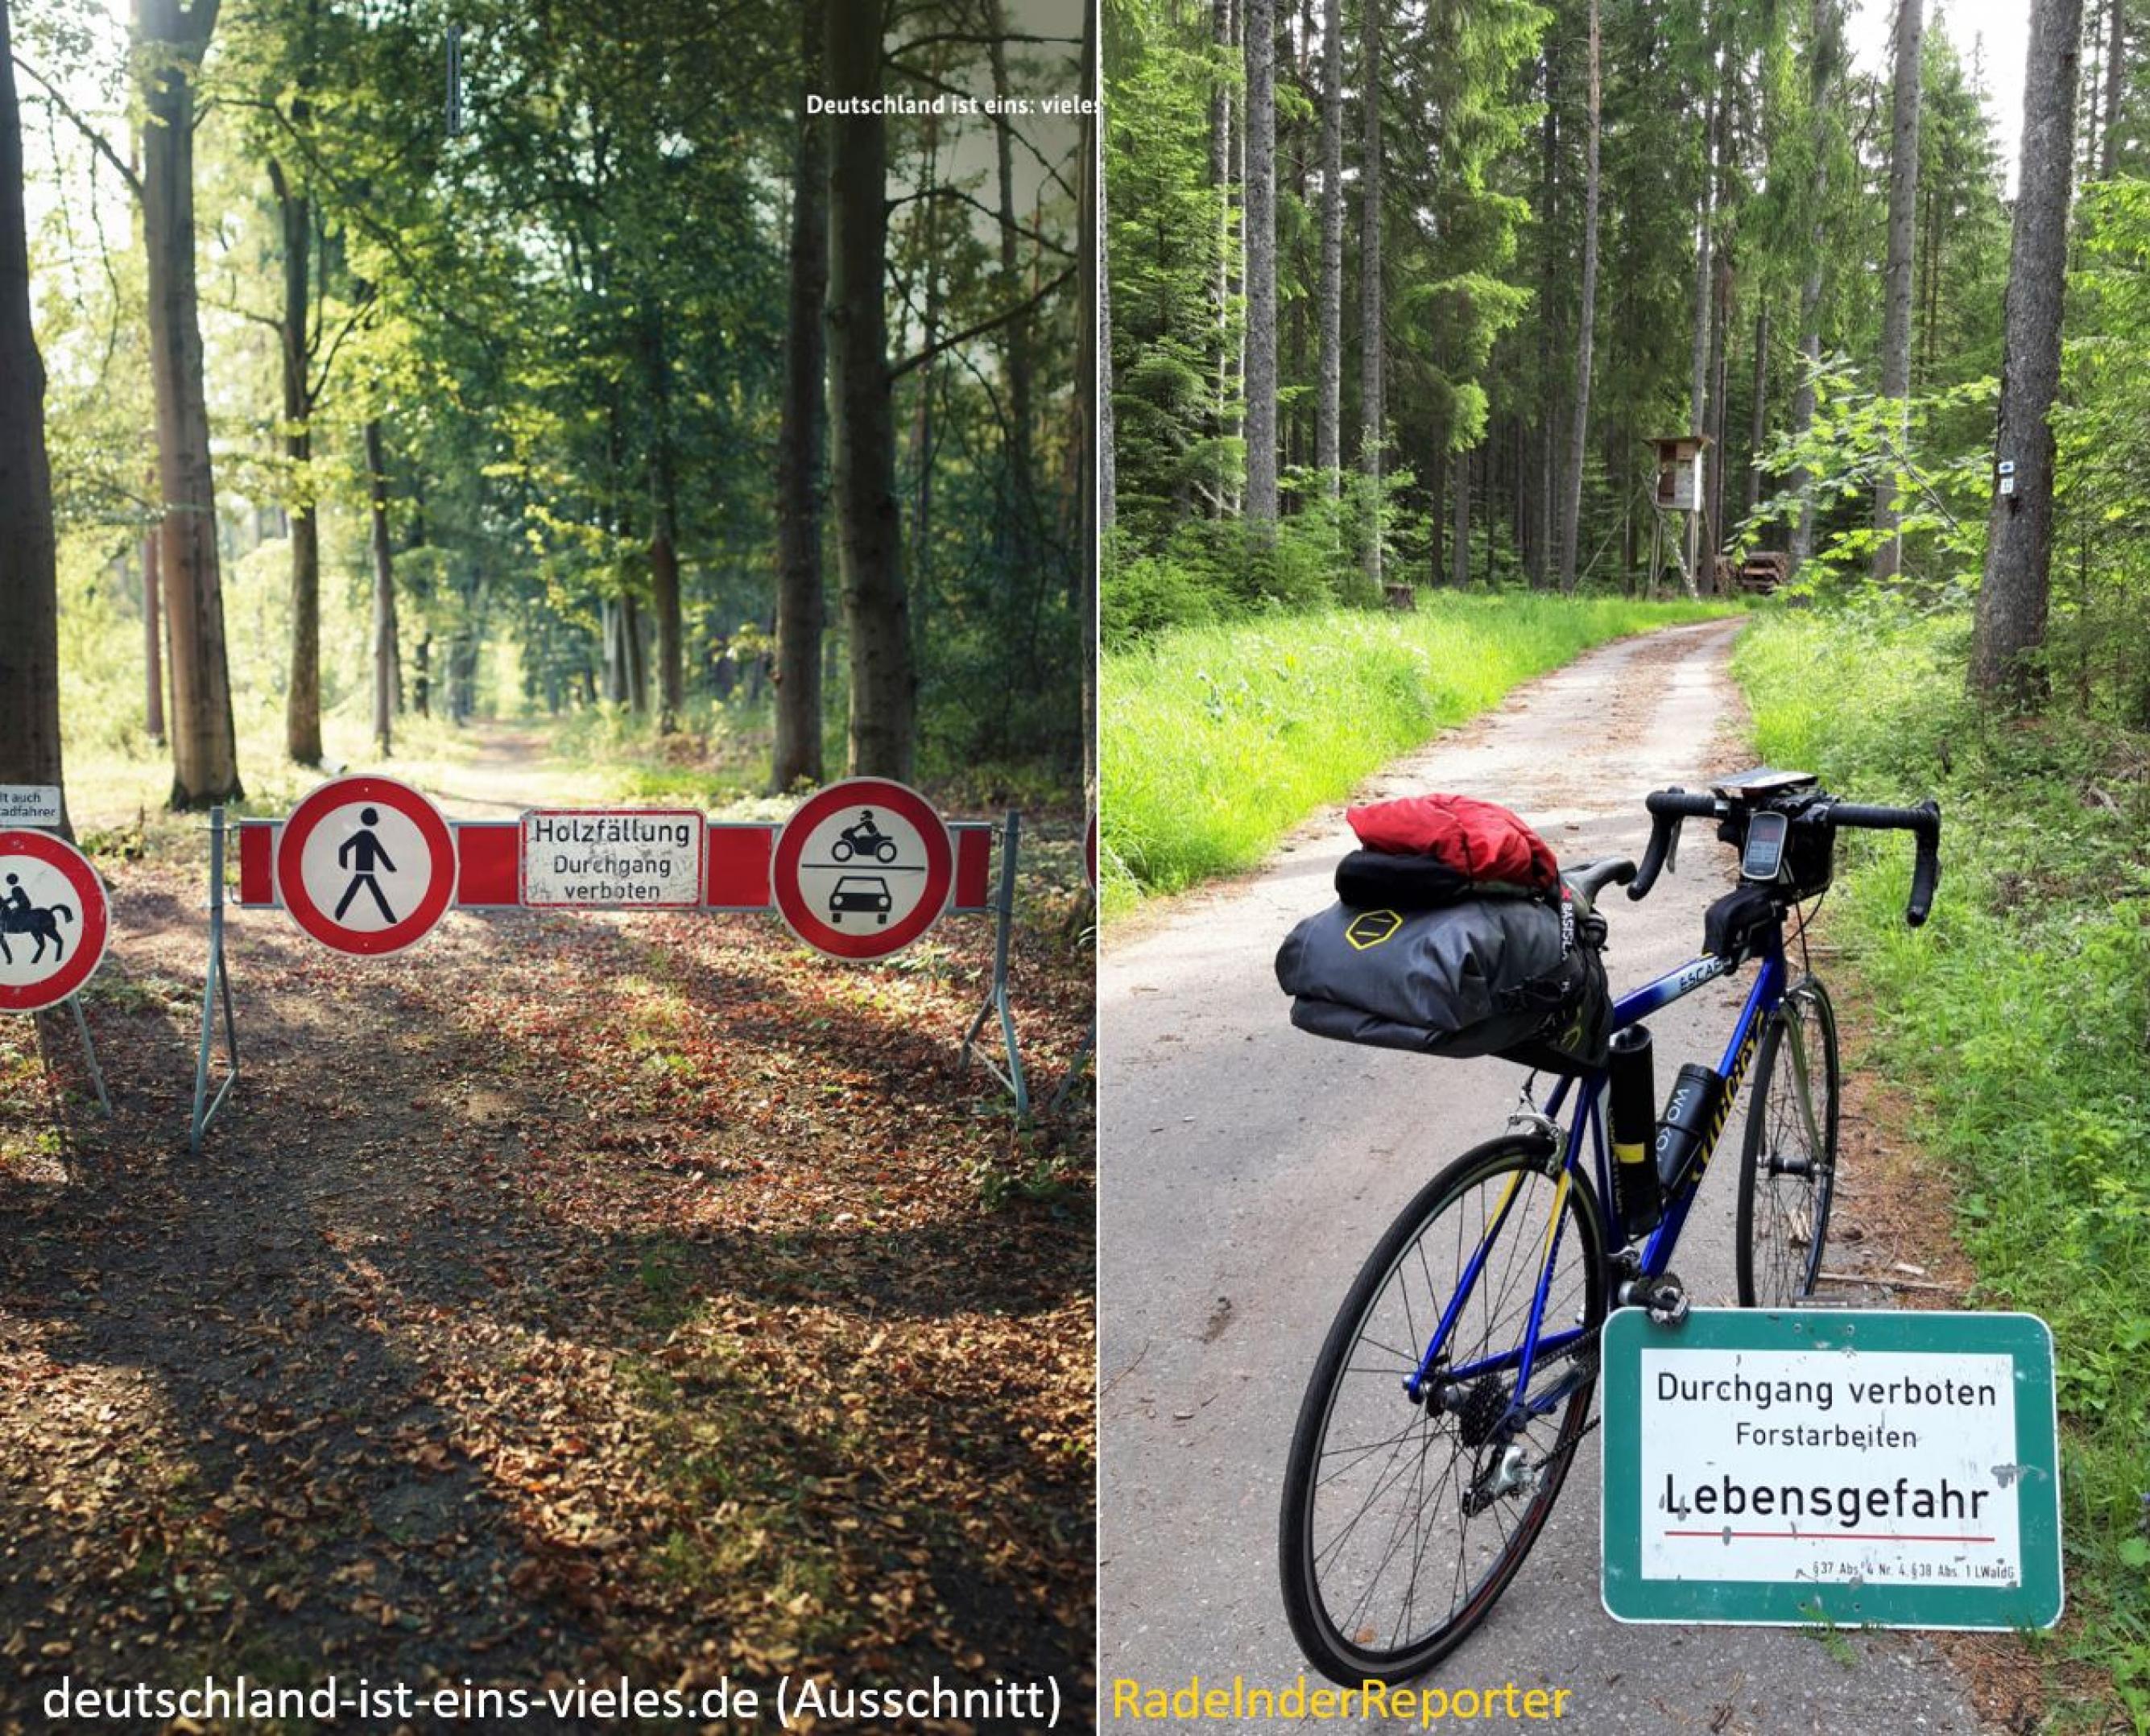 zweigeteiltes Bild: links das Bild der Regierungskampagne, rechts das des RadelndenReporters; beide Bilder zeigen Verbotsschilder im Wald.